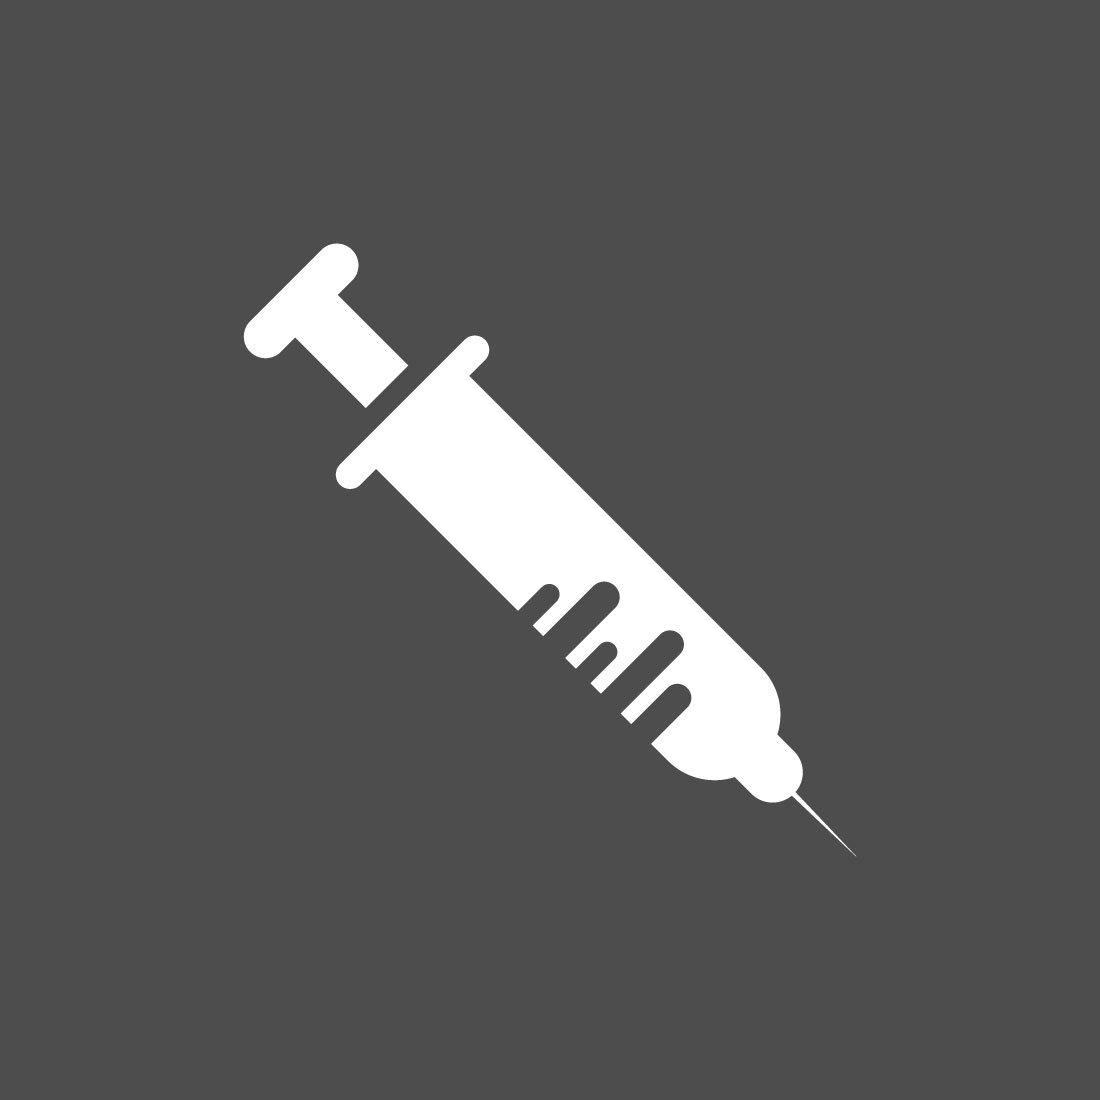 Medical Syringe Injection Logo design Concept, Vector illustration preview image.